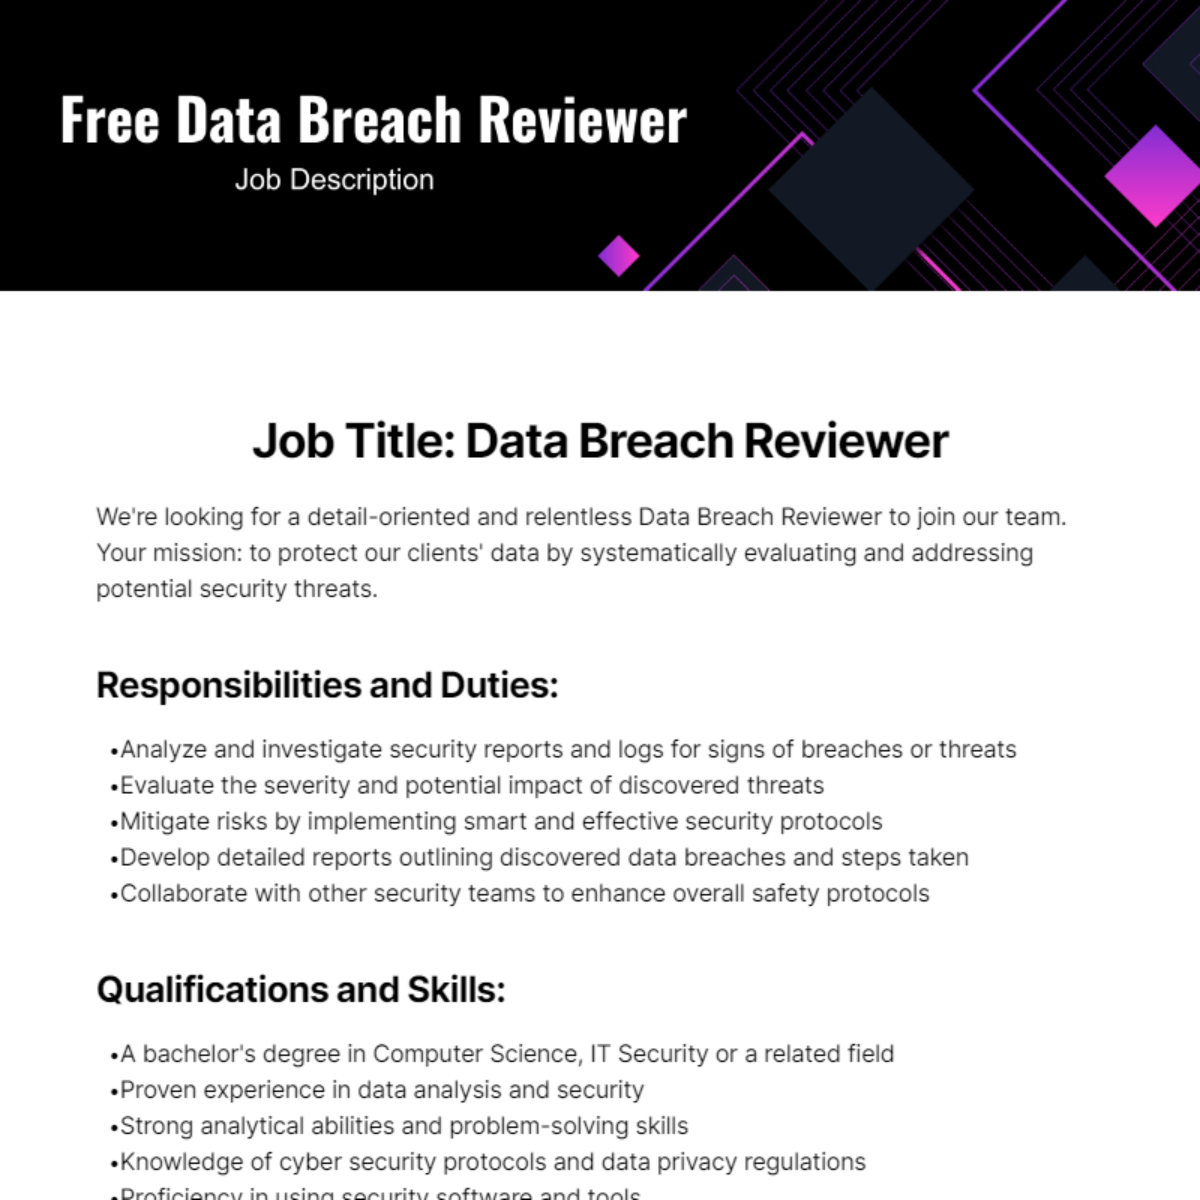 Free Data Breach Reviewer Job Description Template